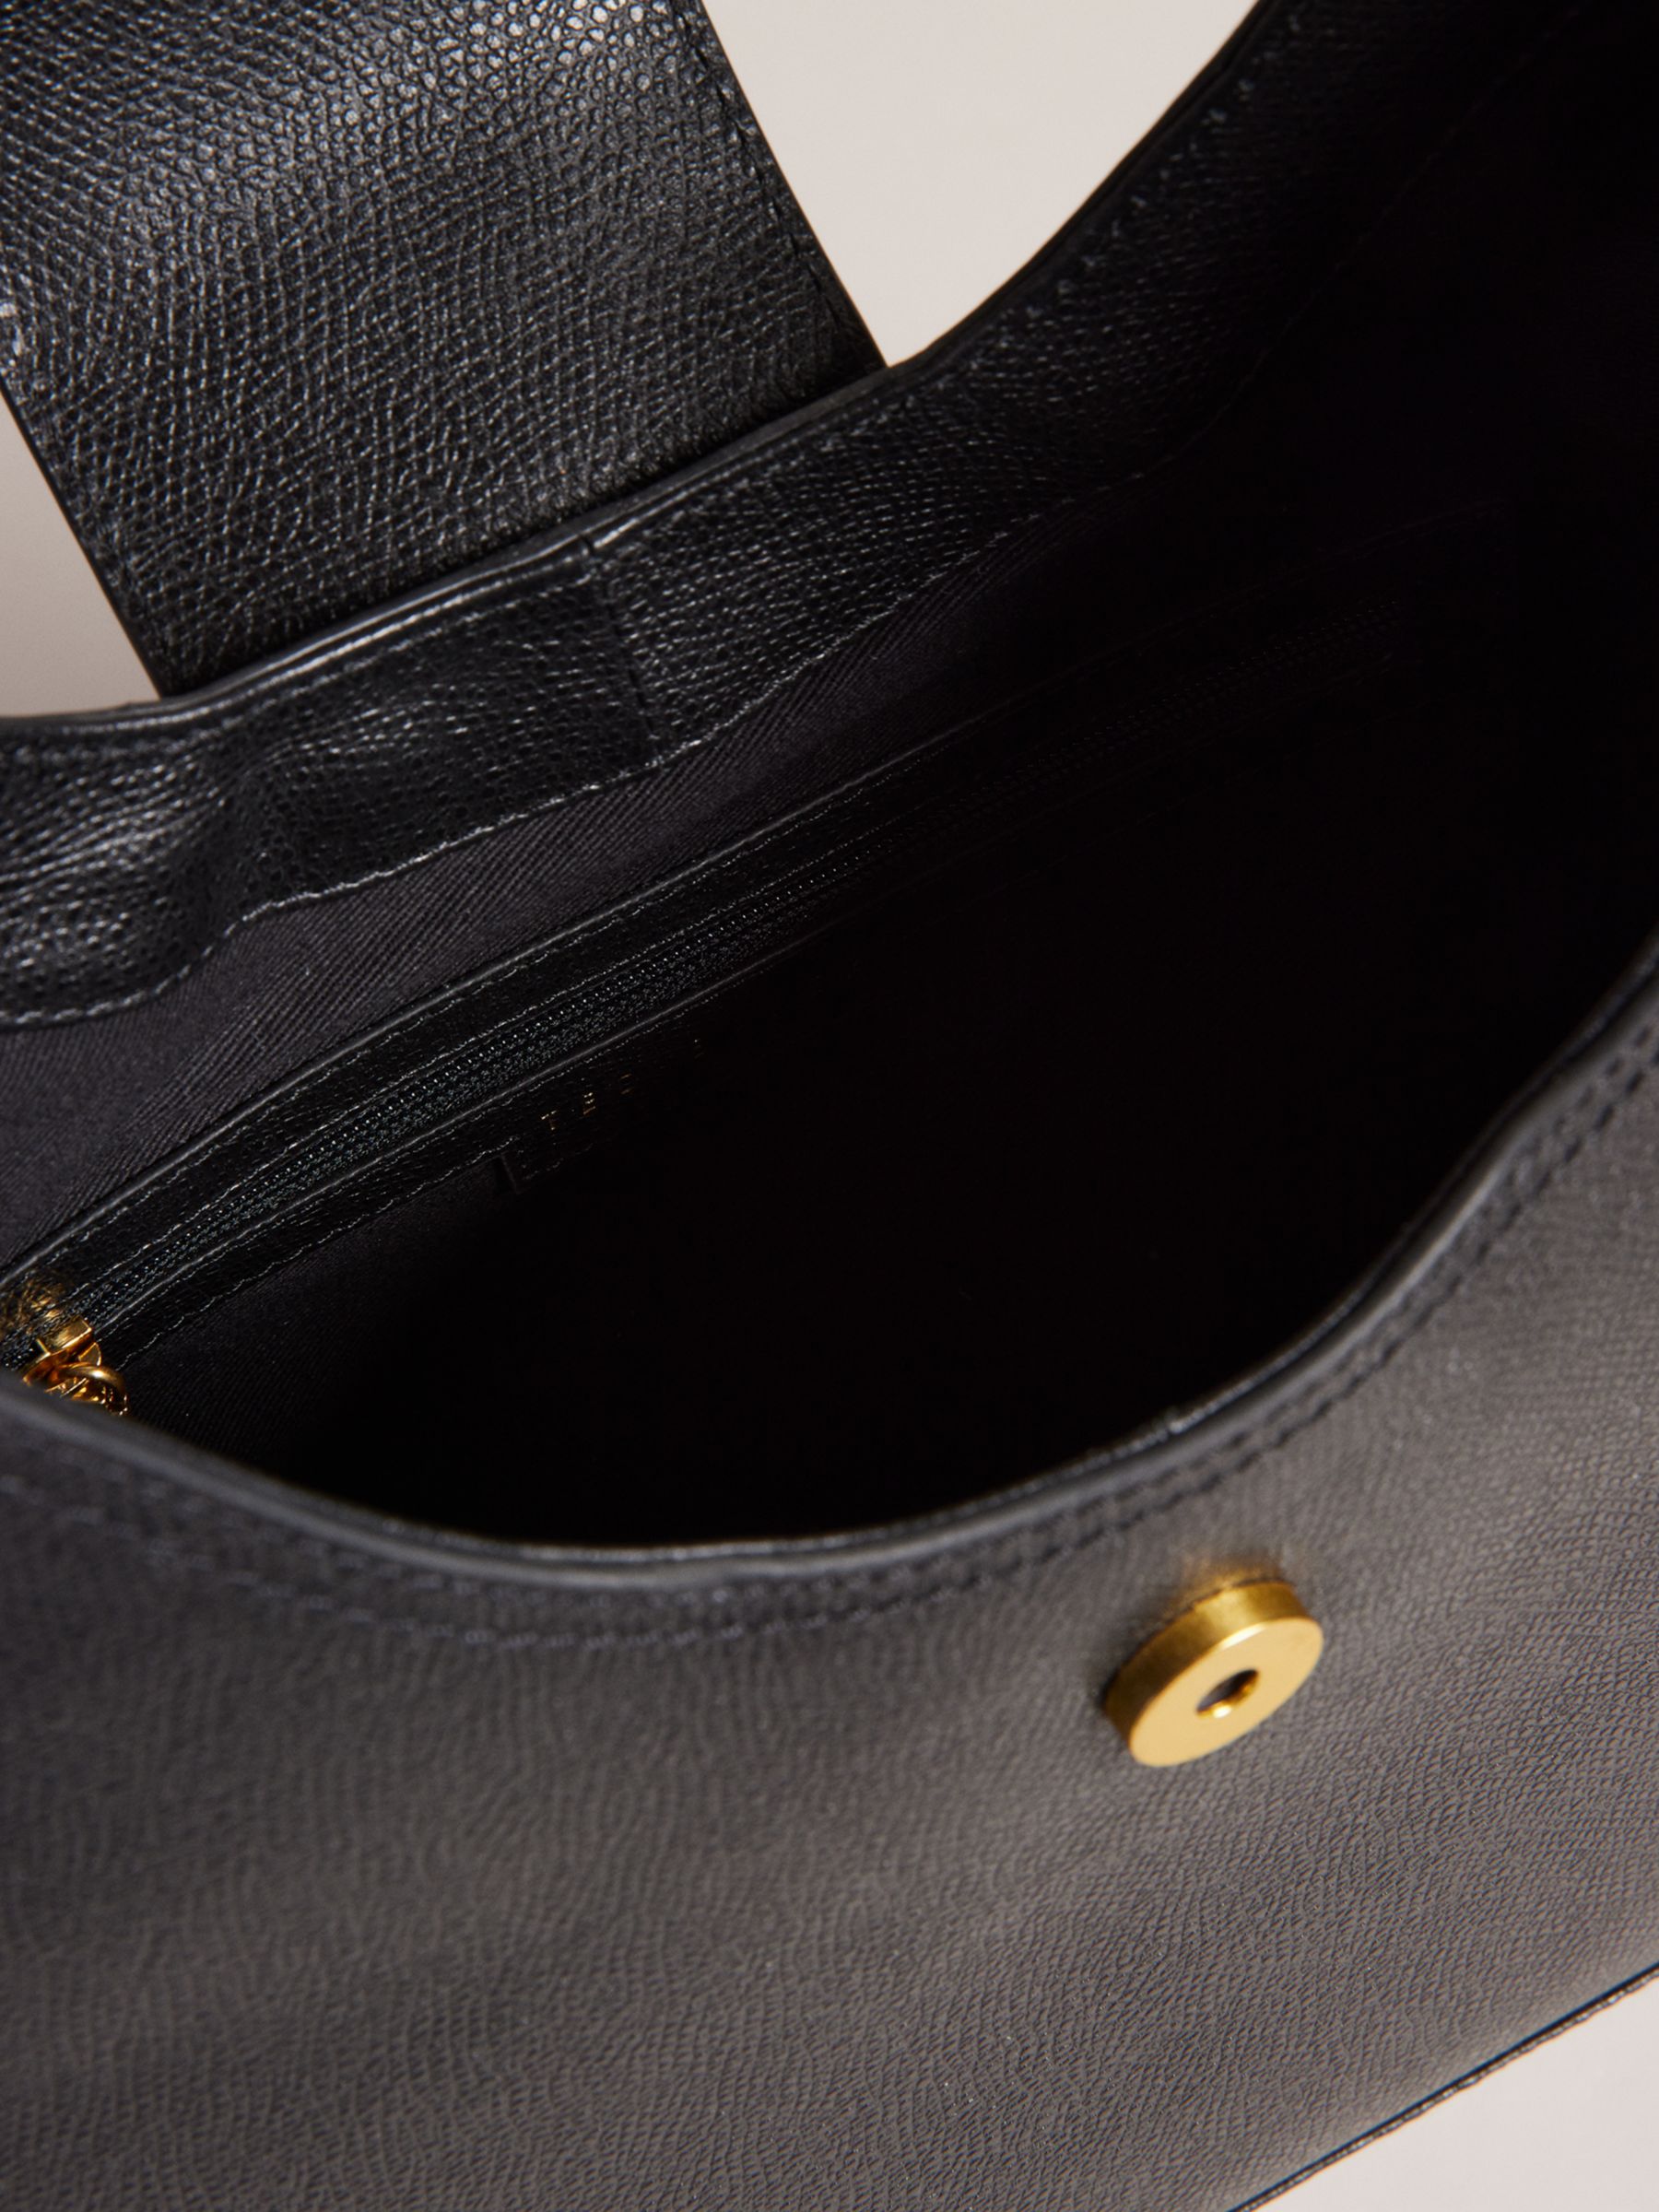 LOUIS·DAISY Women's Leather Shoulder Bag